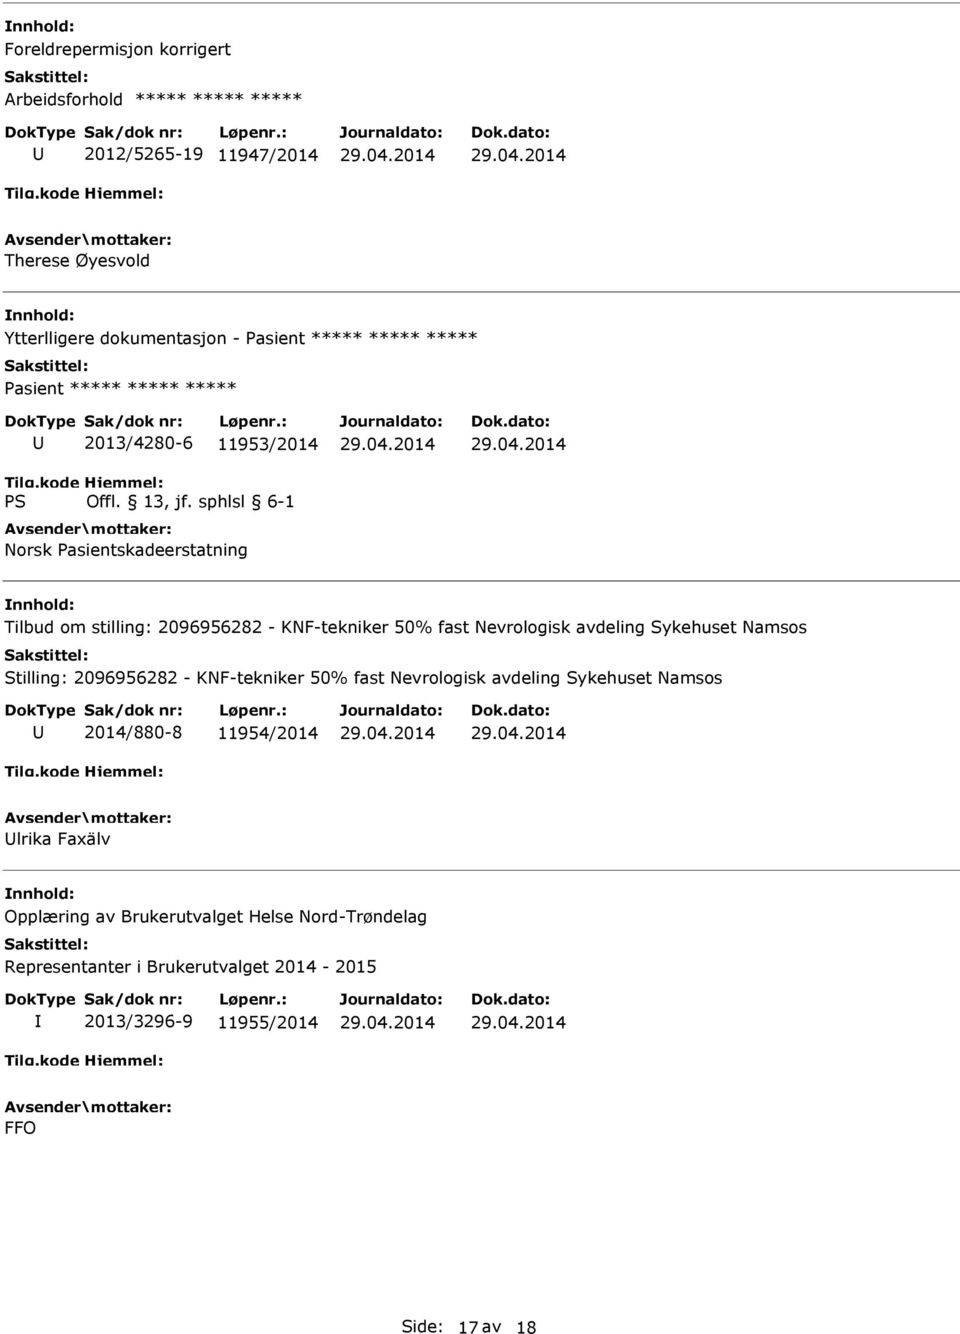 Nevrologisk avdeling Sykehuset Namsos Stilling: 2096956282 - KNF-tekniker 50% fast Nevrologisk avdeling Sykehuset Namsos 2014/880-8 11954/2014